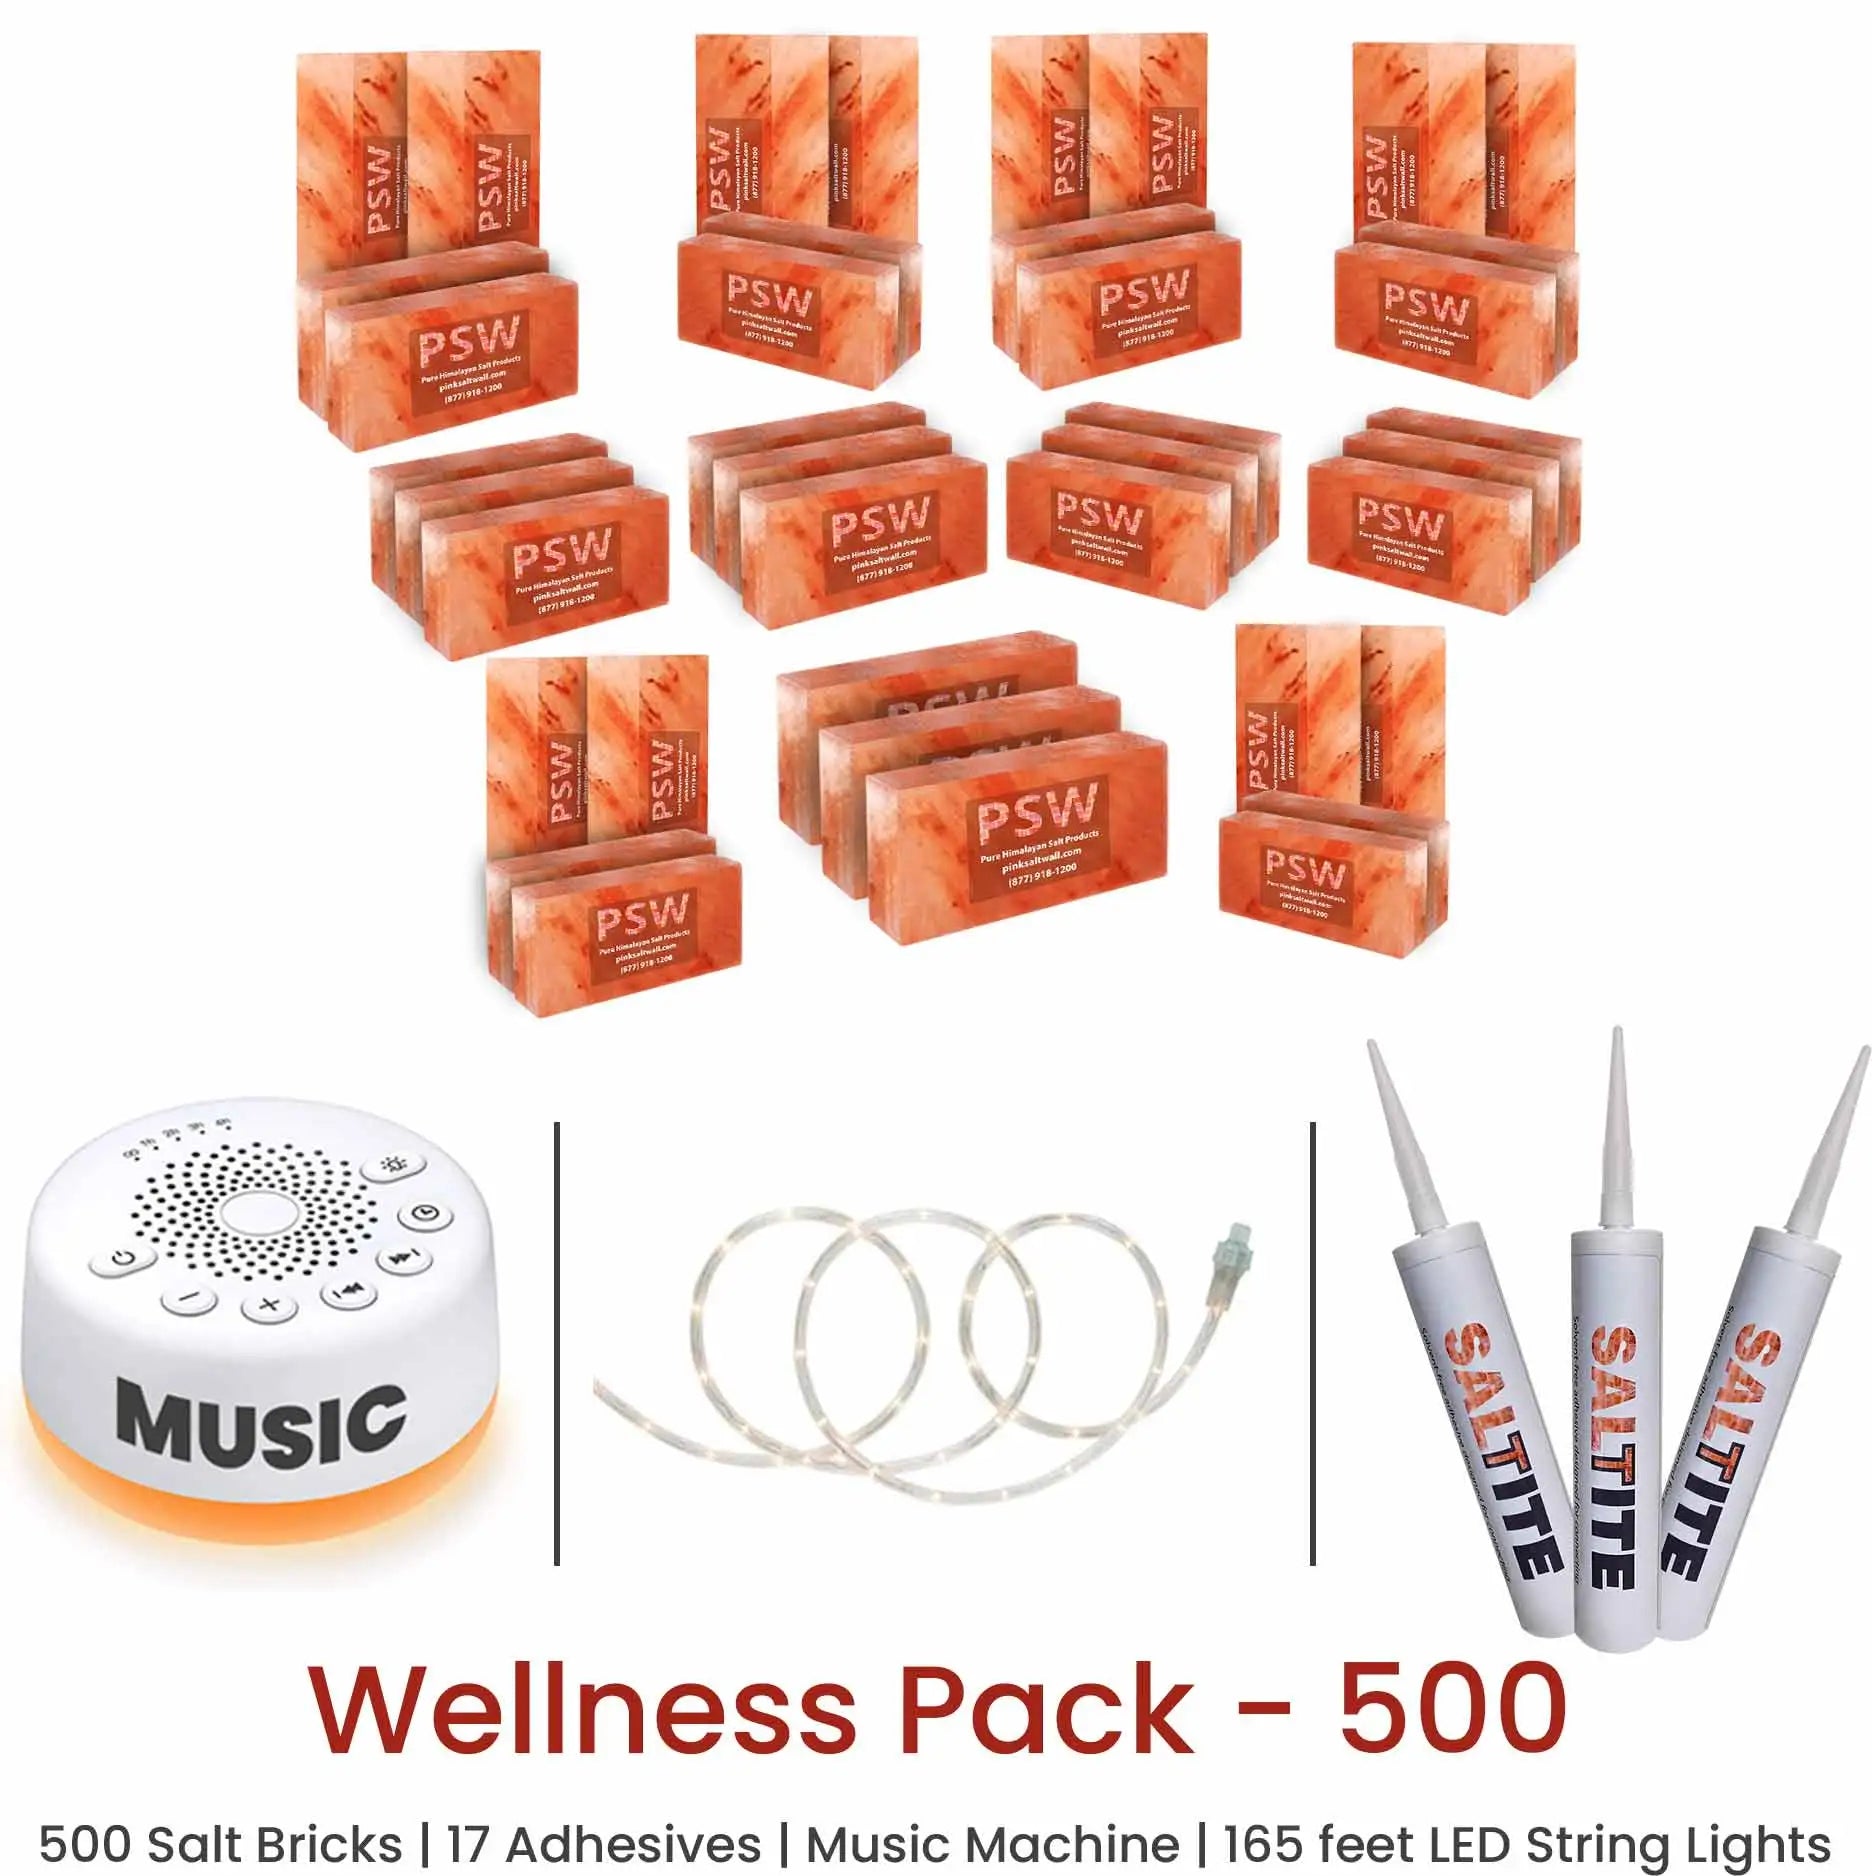 Wellness Pack - 500 Himalayan Salt Bricks 8" x 4" x 2"